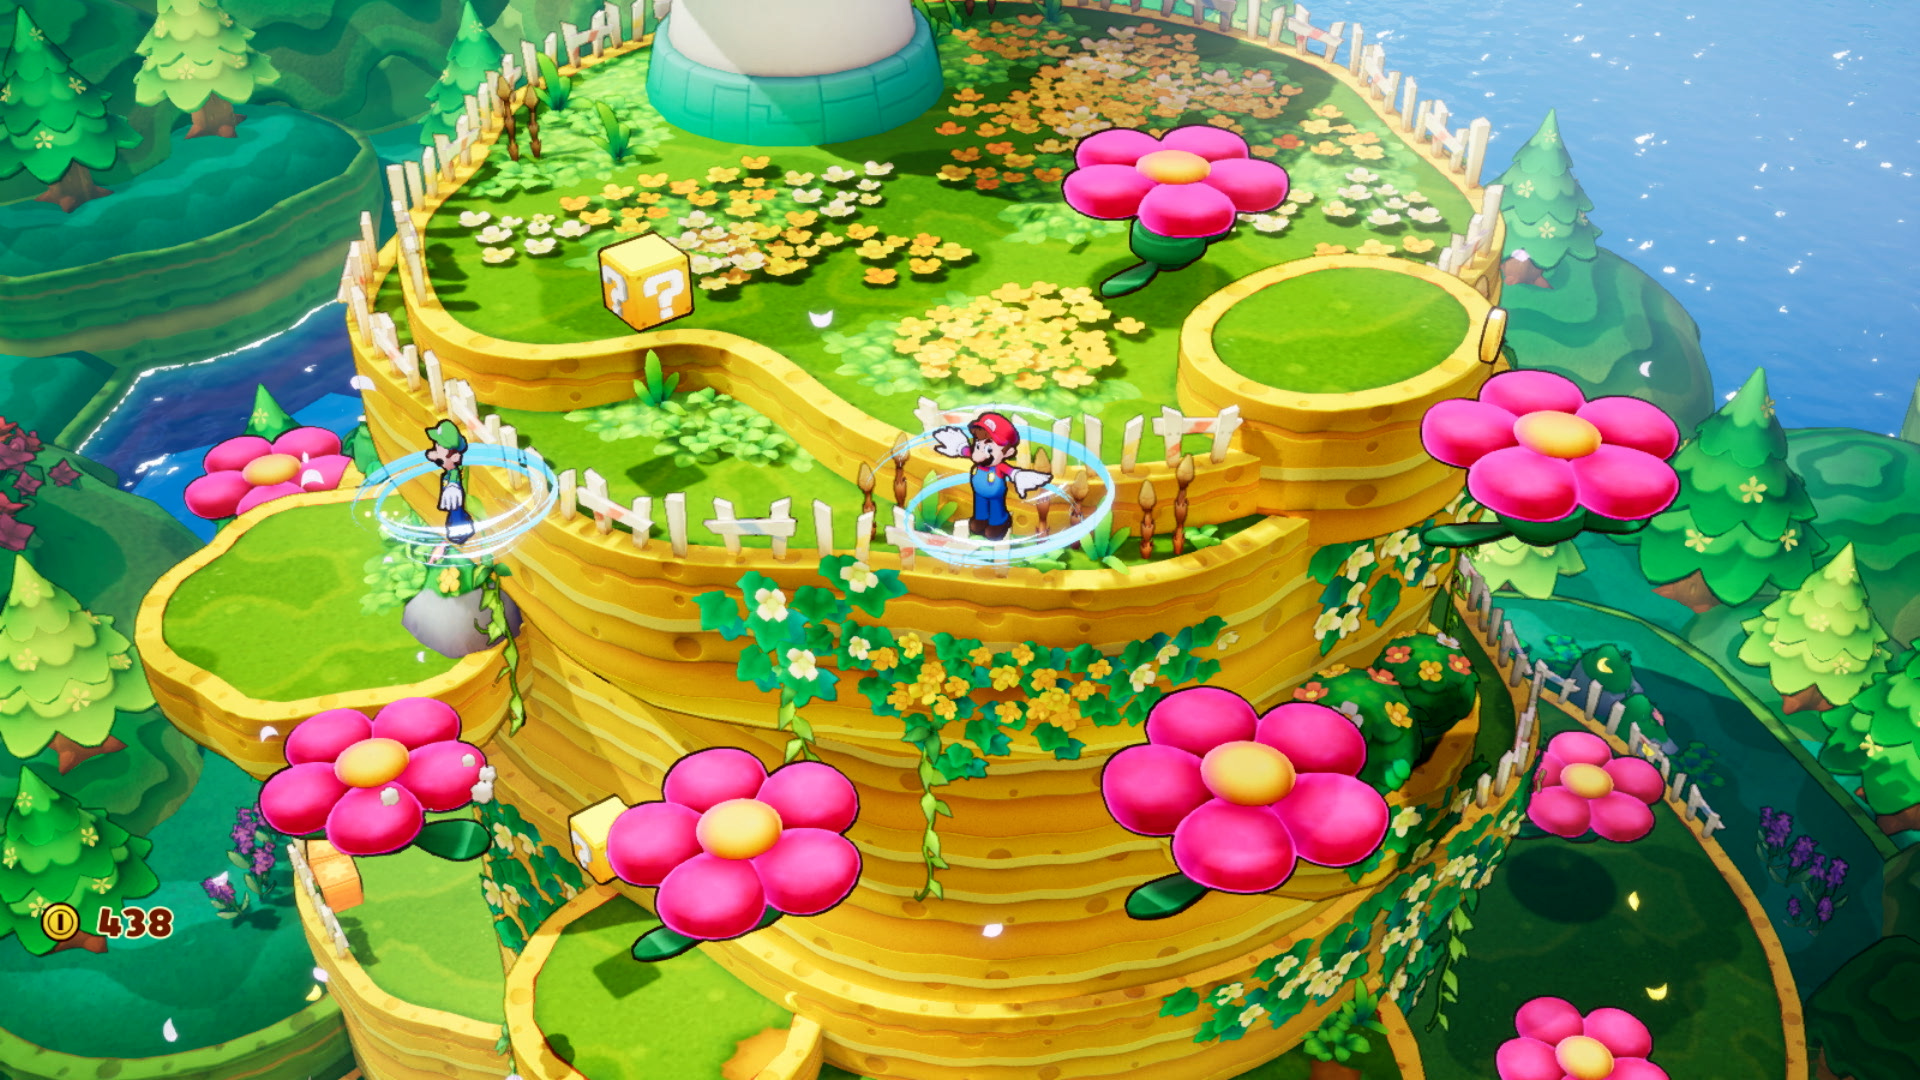 Mario et luigi l epopee fraternelle screenshot 2 2